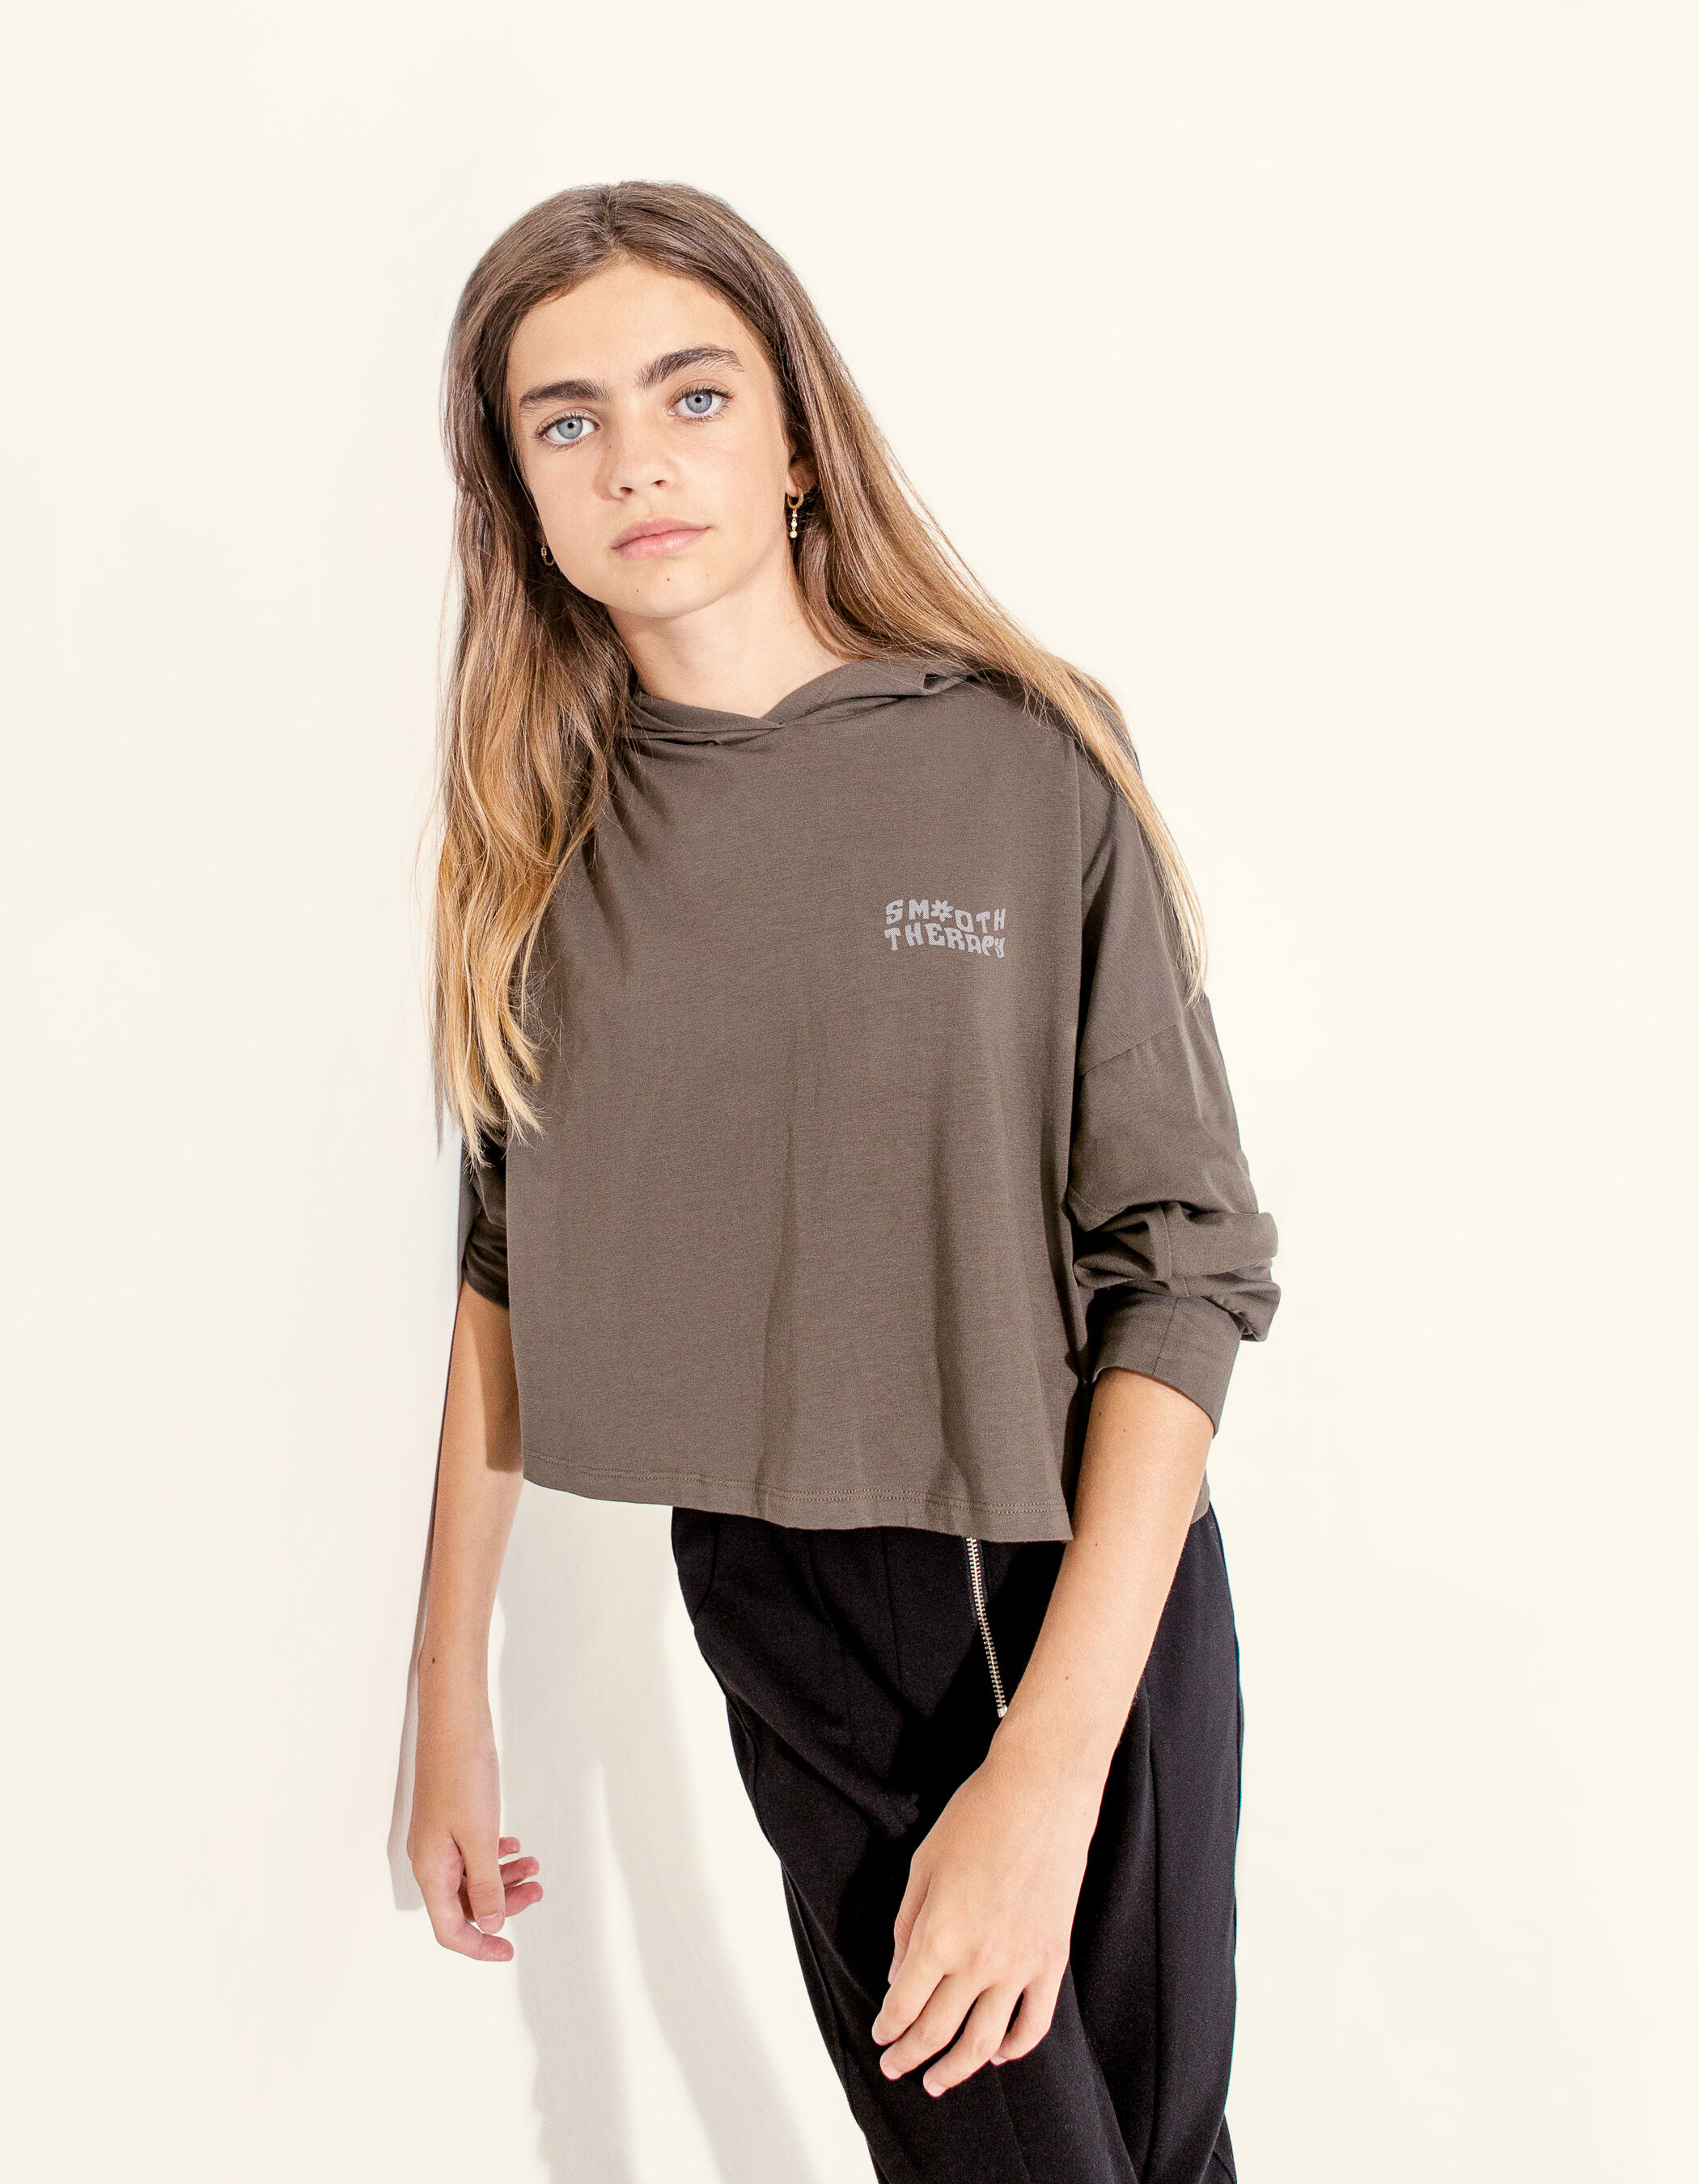 Kleding Meisjeskleding Tops & T-shirts Blouses Op maat gemaakte peutershirts 